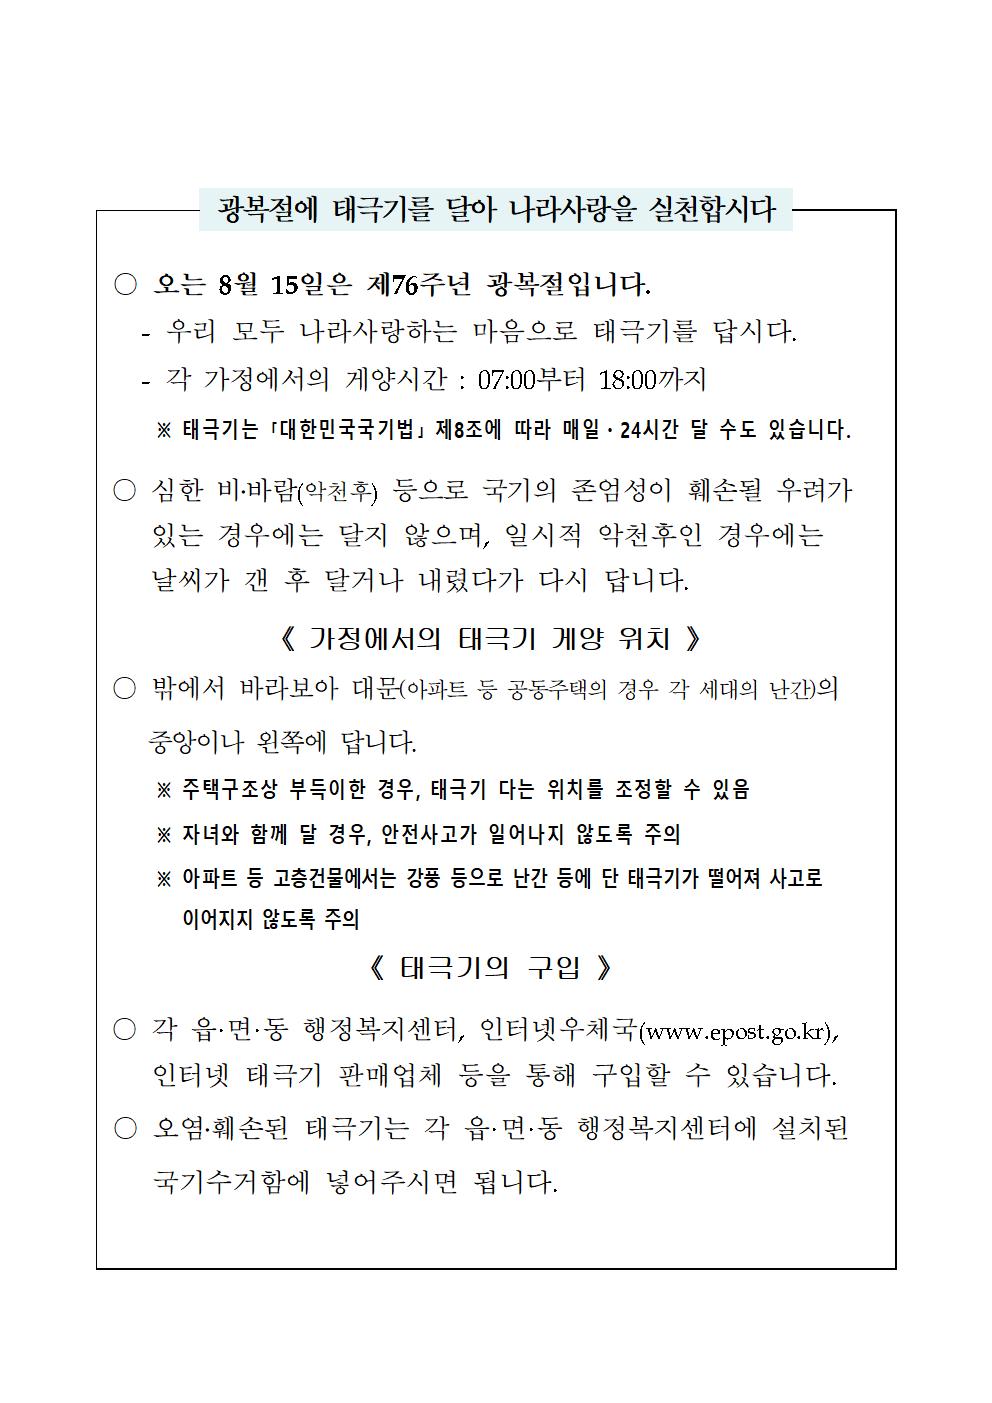 김 제 시 장 인재양성과_태극기 달기 운동 홍보 자료001